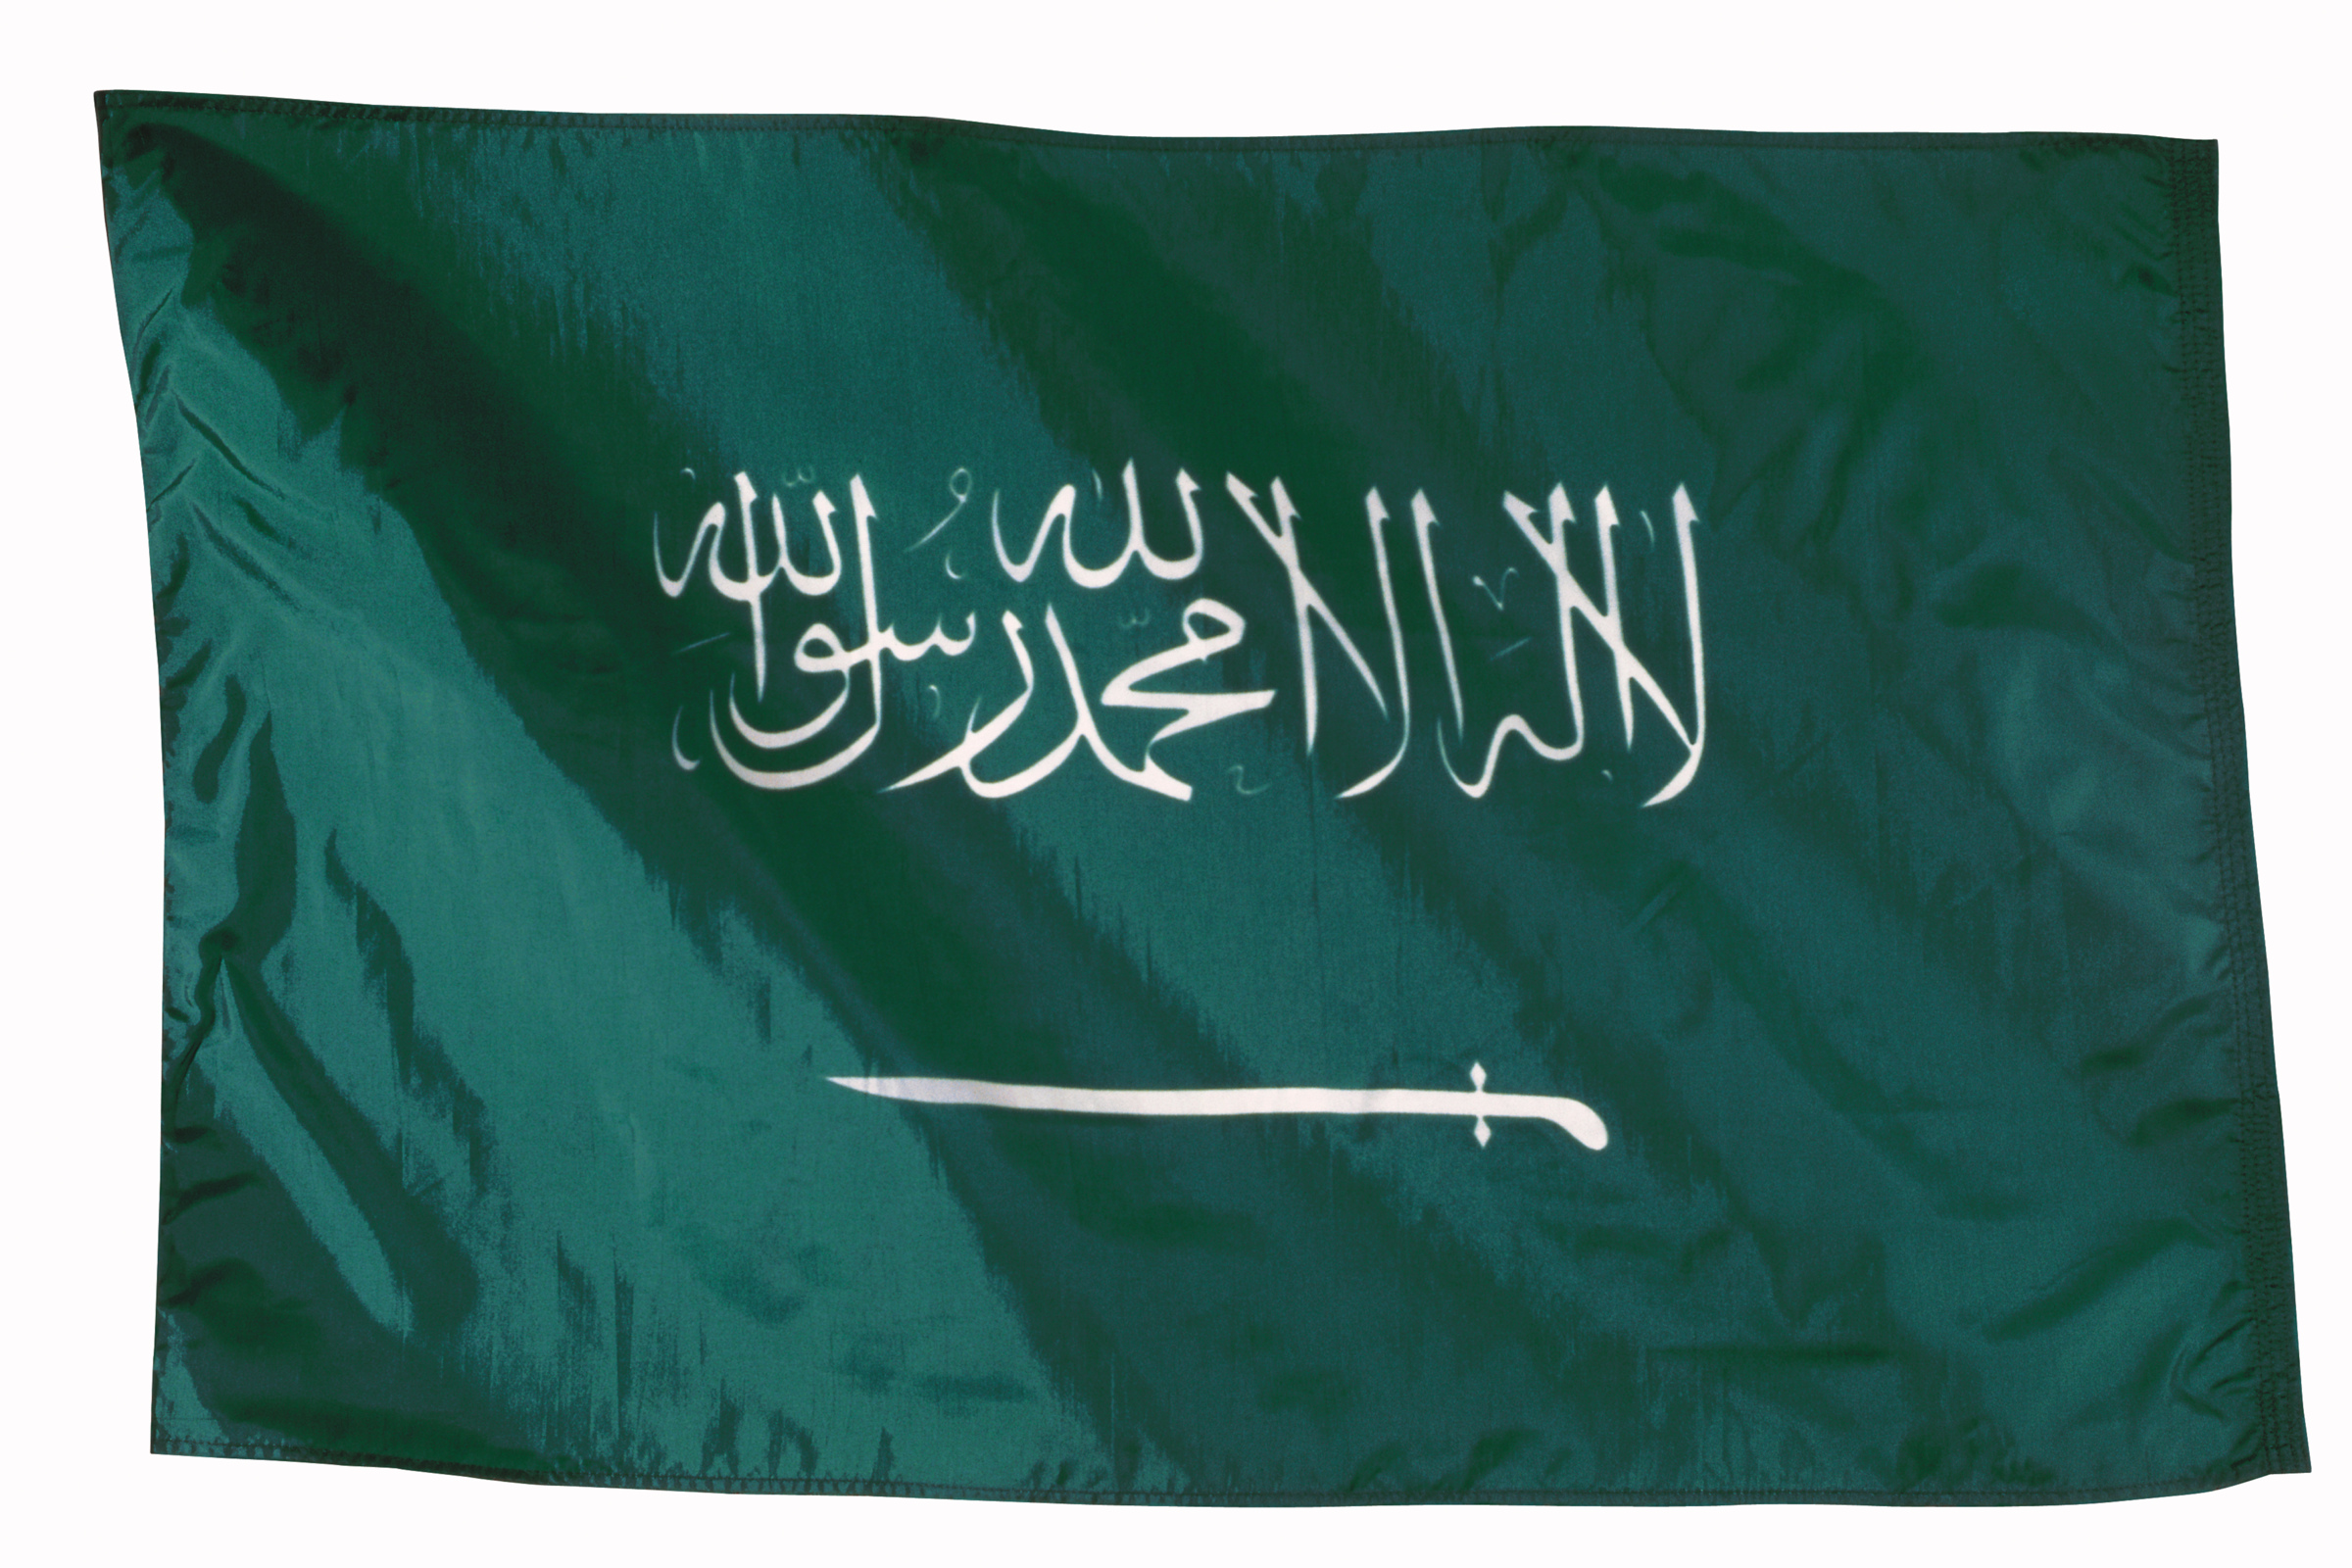 Flagge Saudi Arabien, Quelle: photos.com